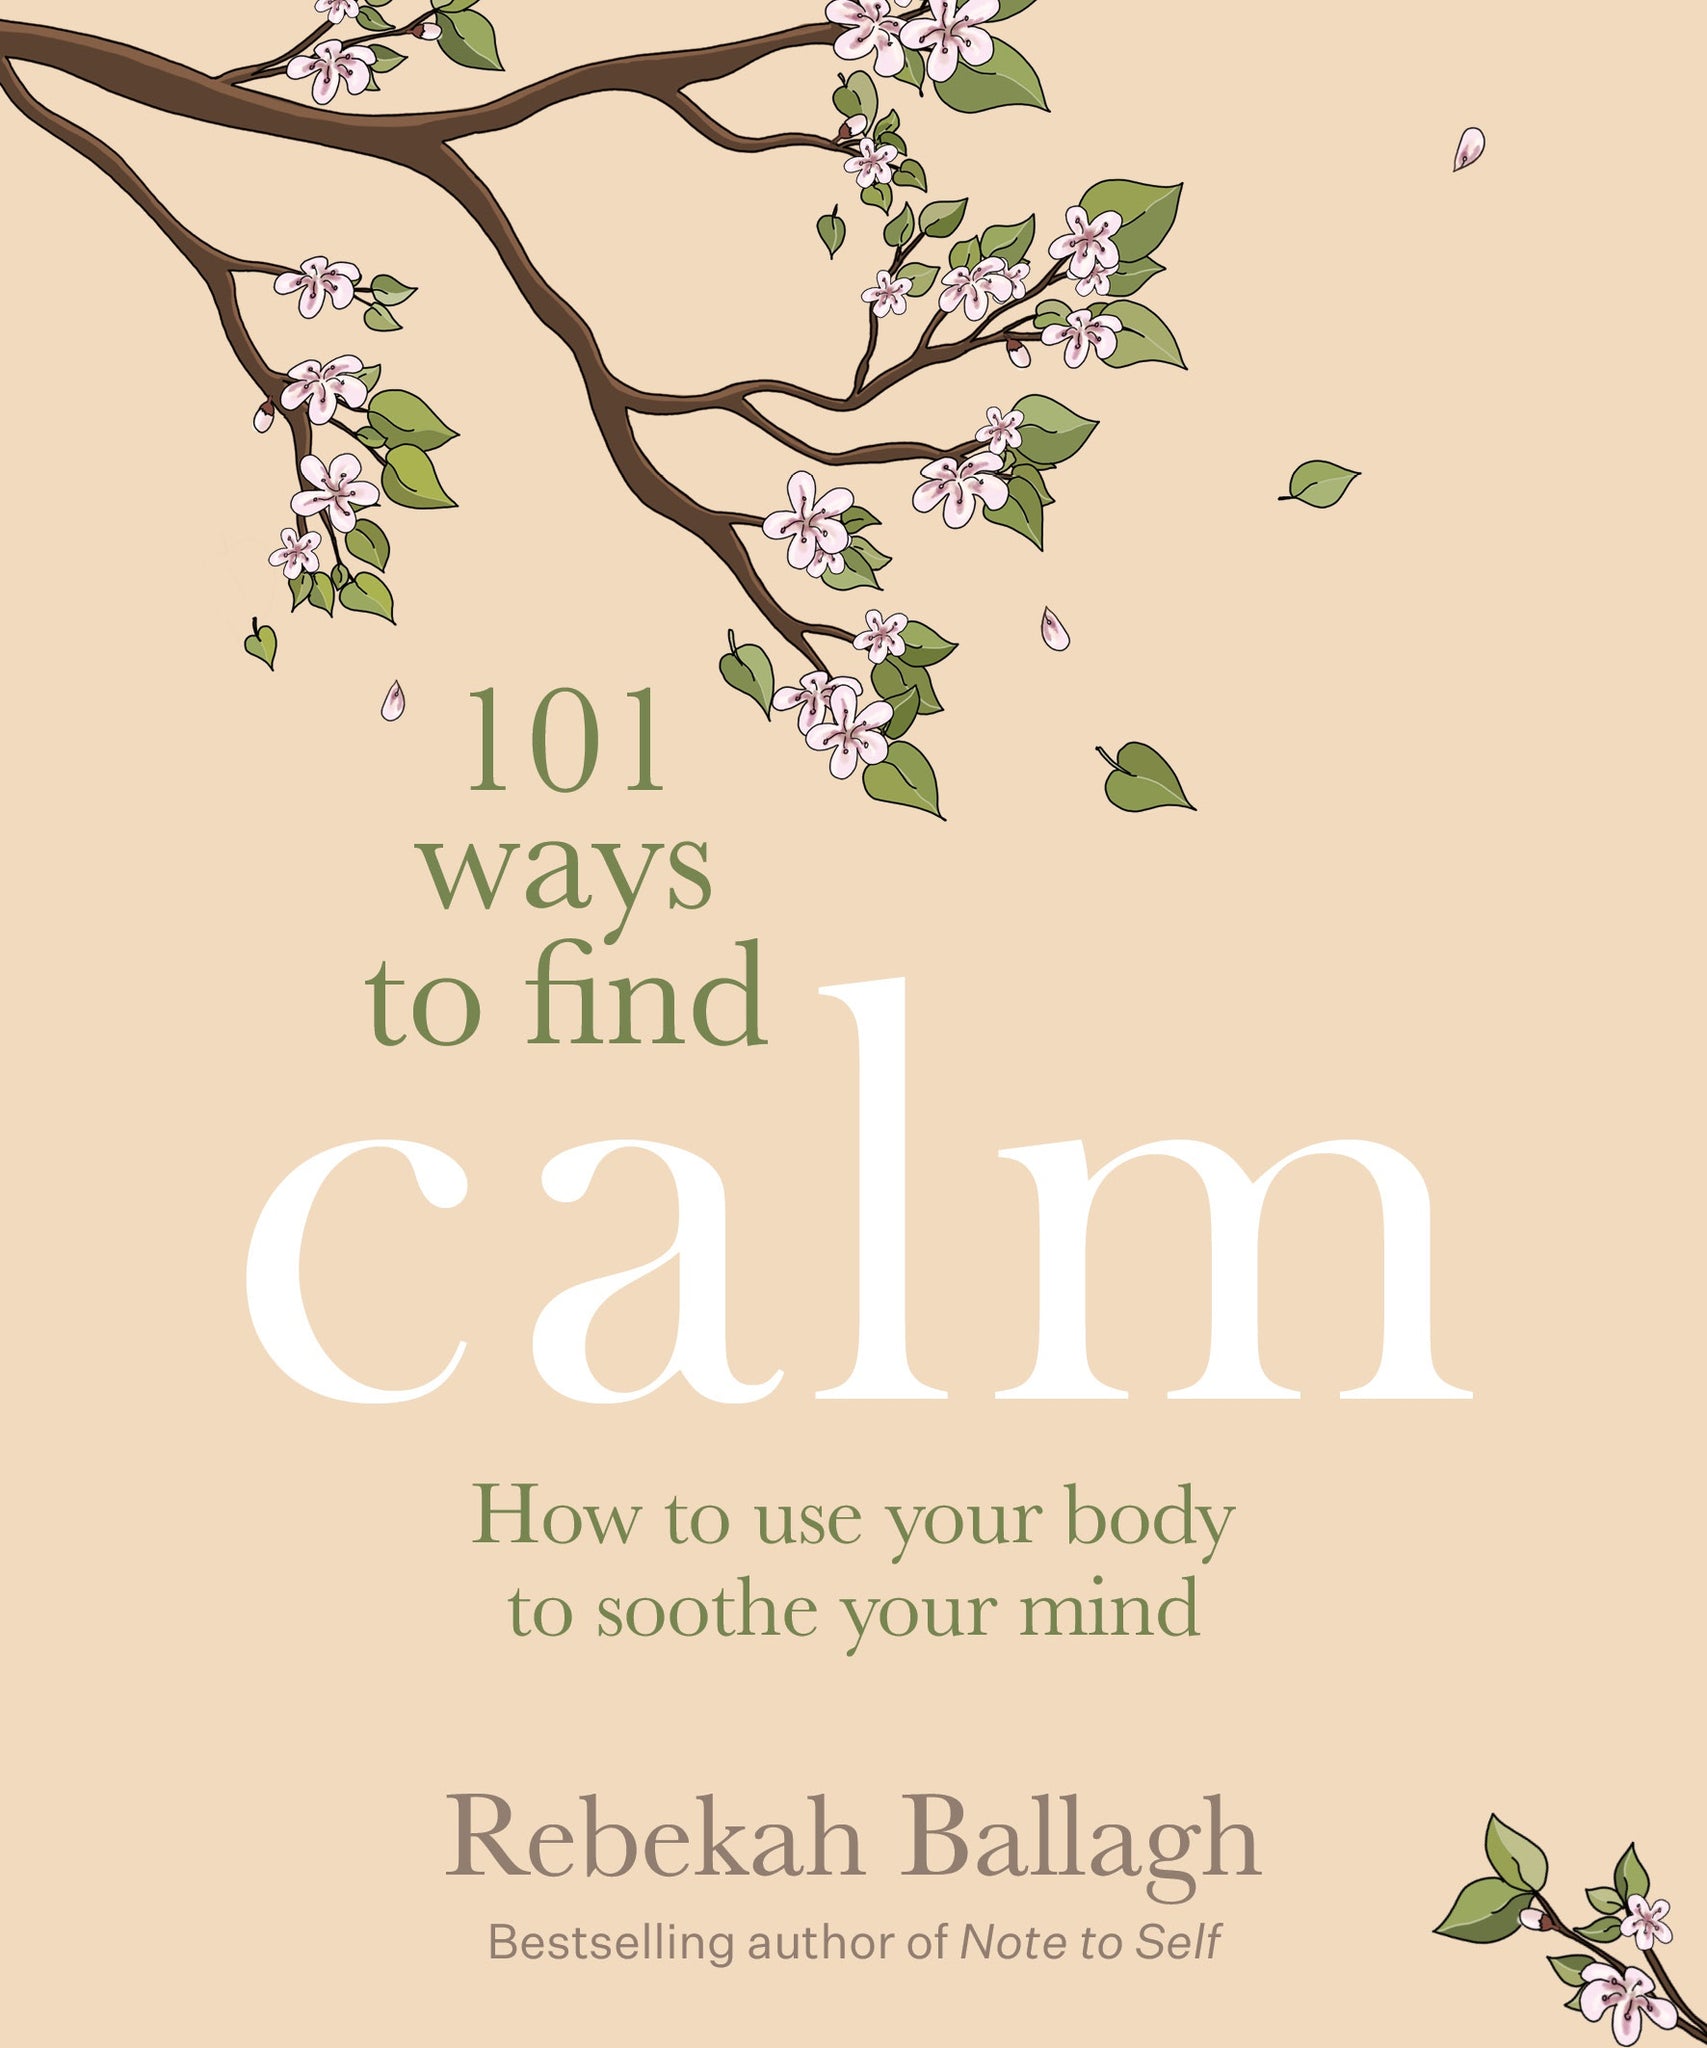 101 Ways to Find Calm